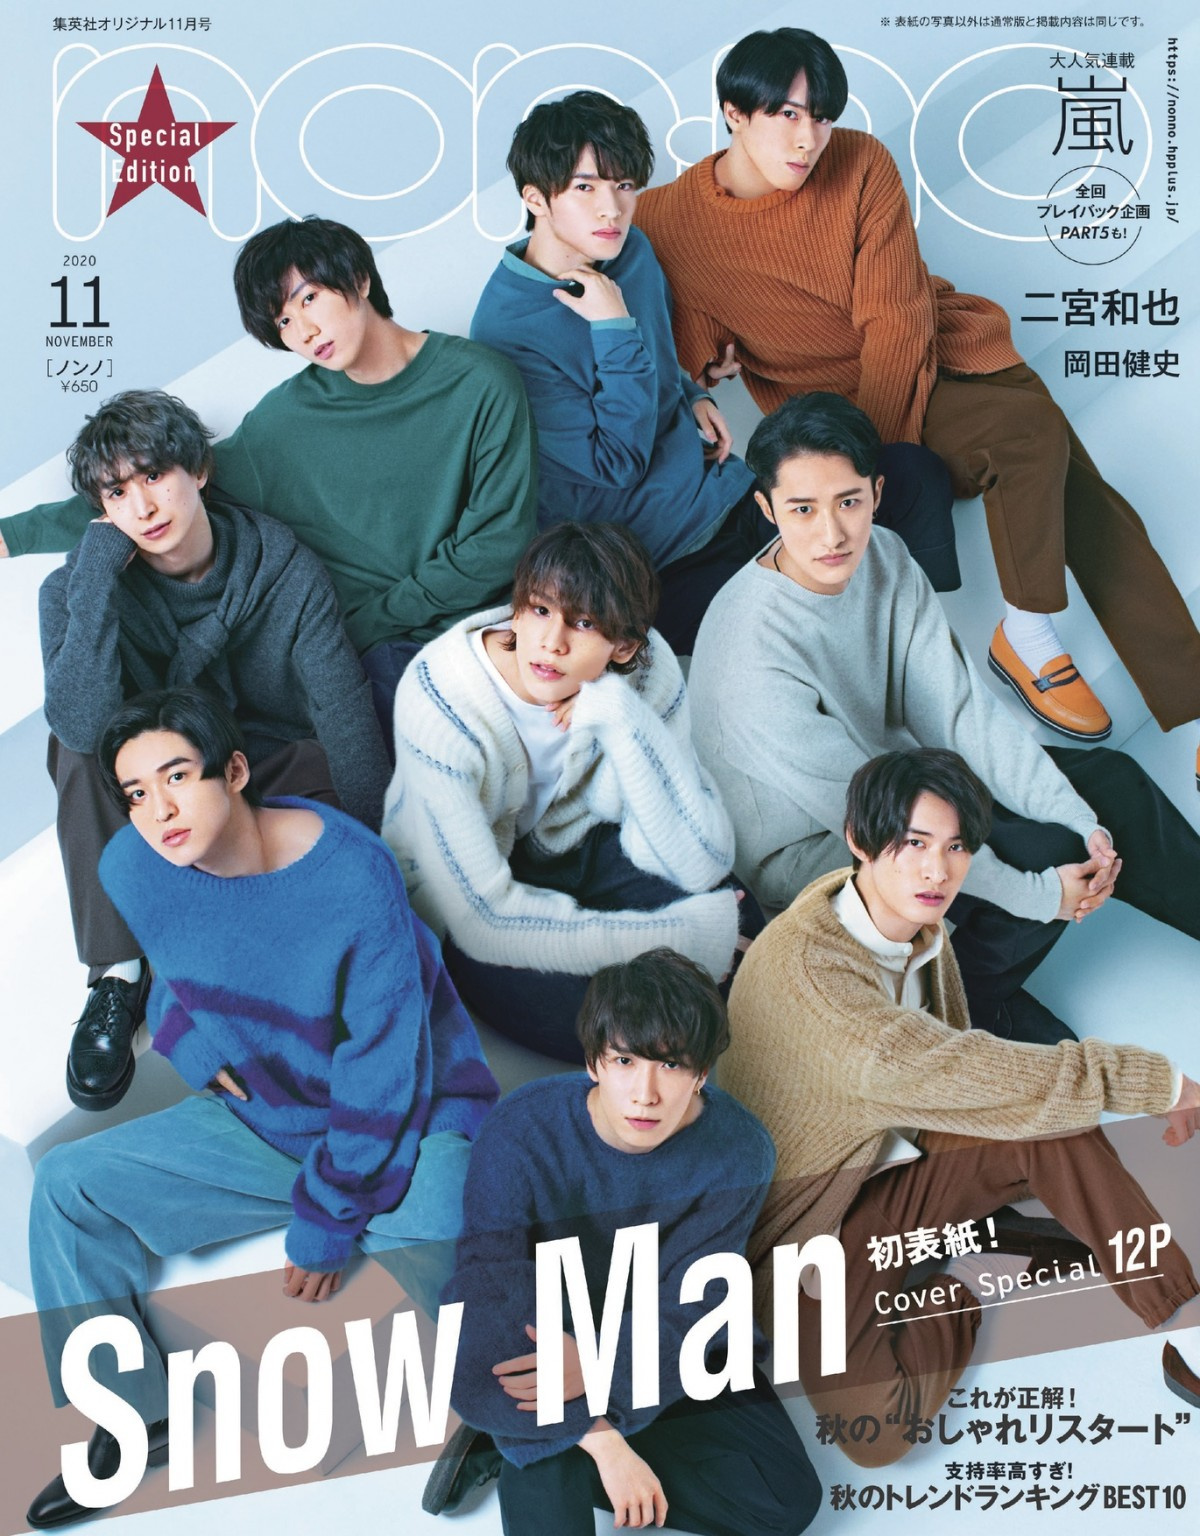 Snowman Non No 特別版の表紙に登場 Sp特集で9つの恋物語を演じる Oricon News